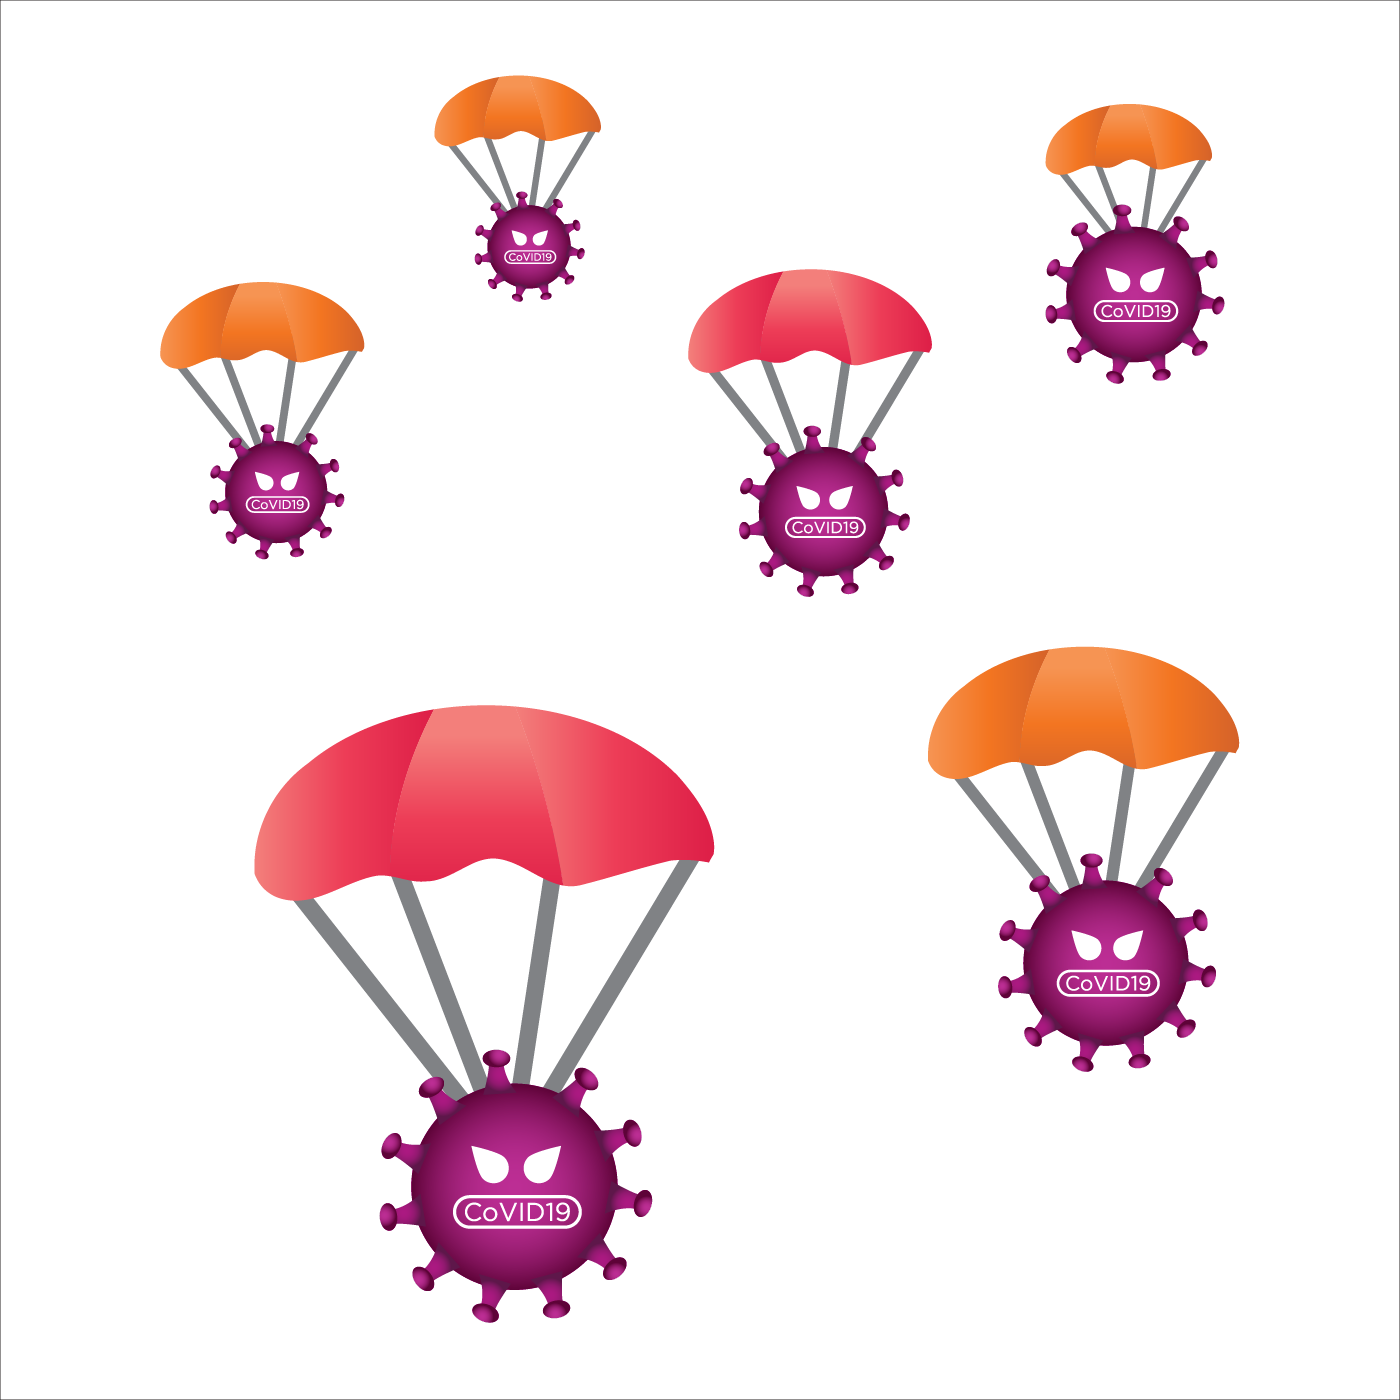 Pngtreecorona virus skydiving 5340628